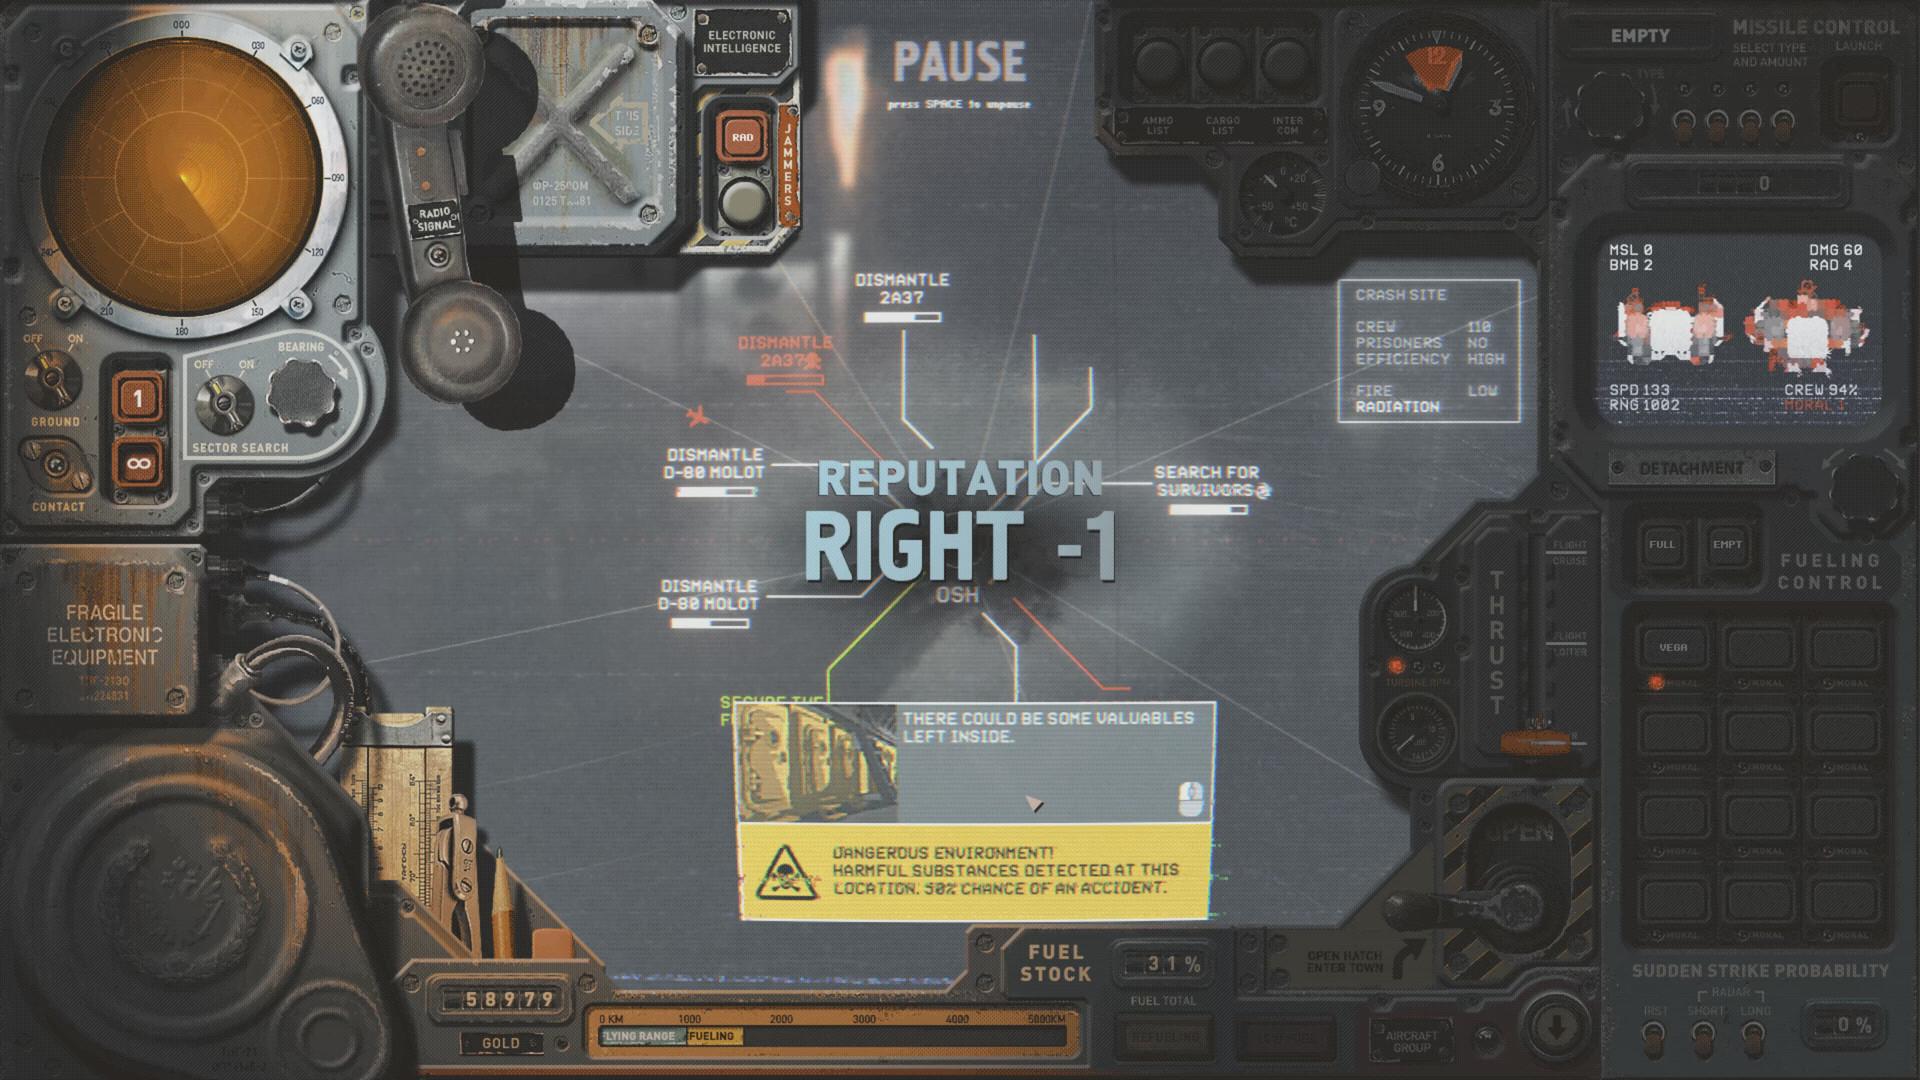 Screenshot №21 from game HighFleet